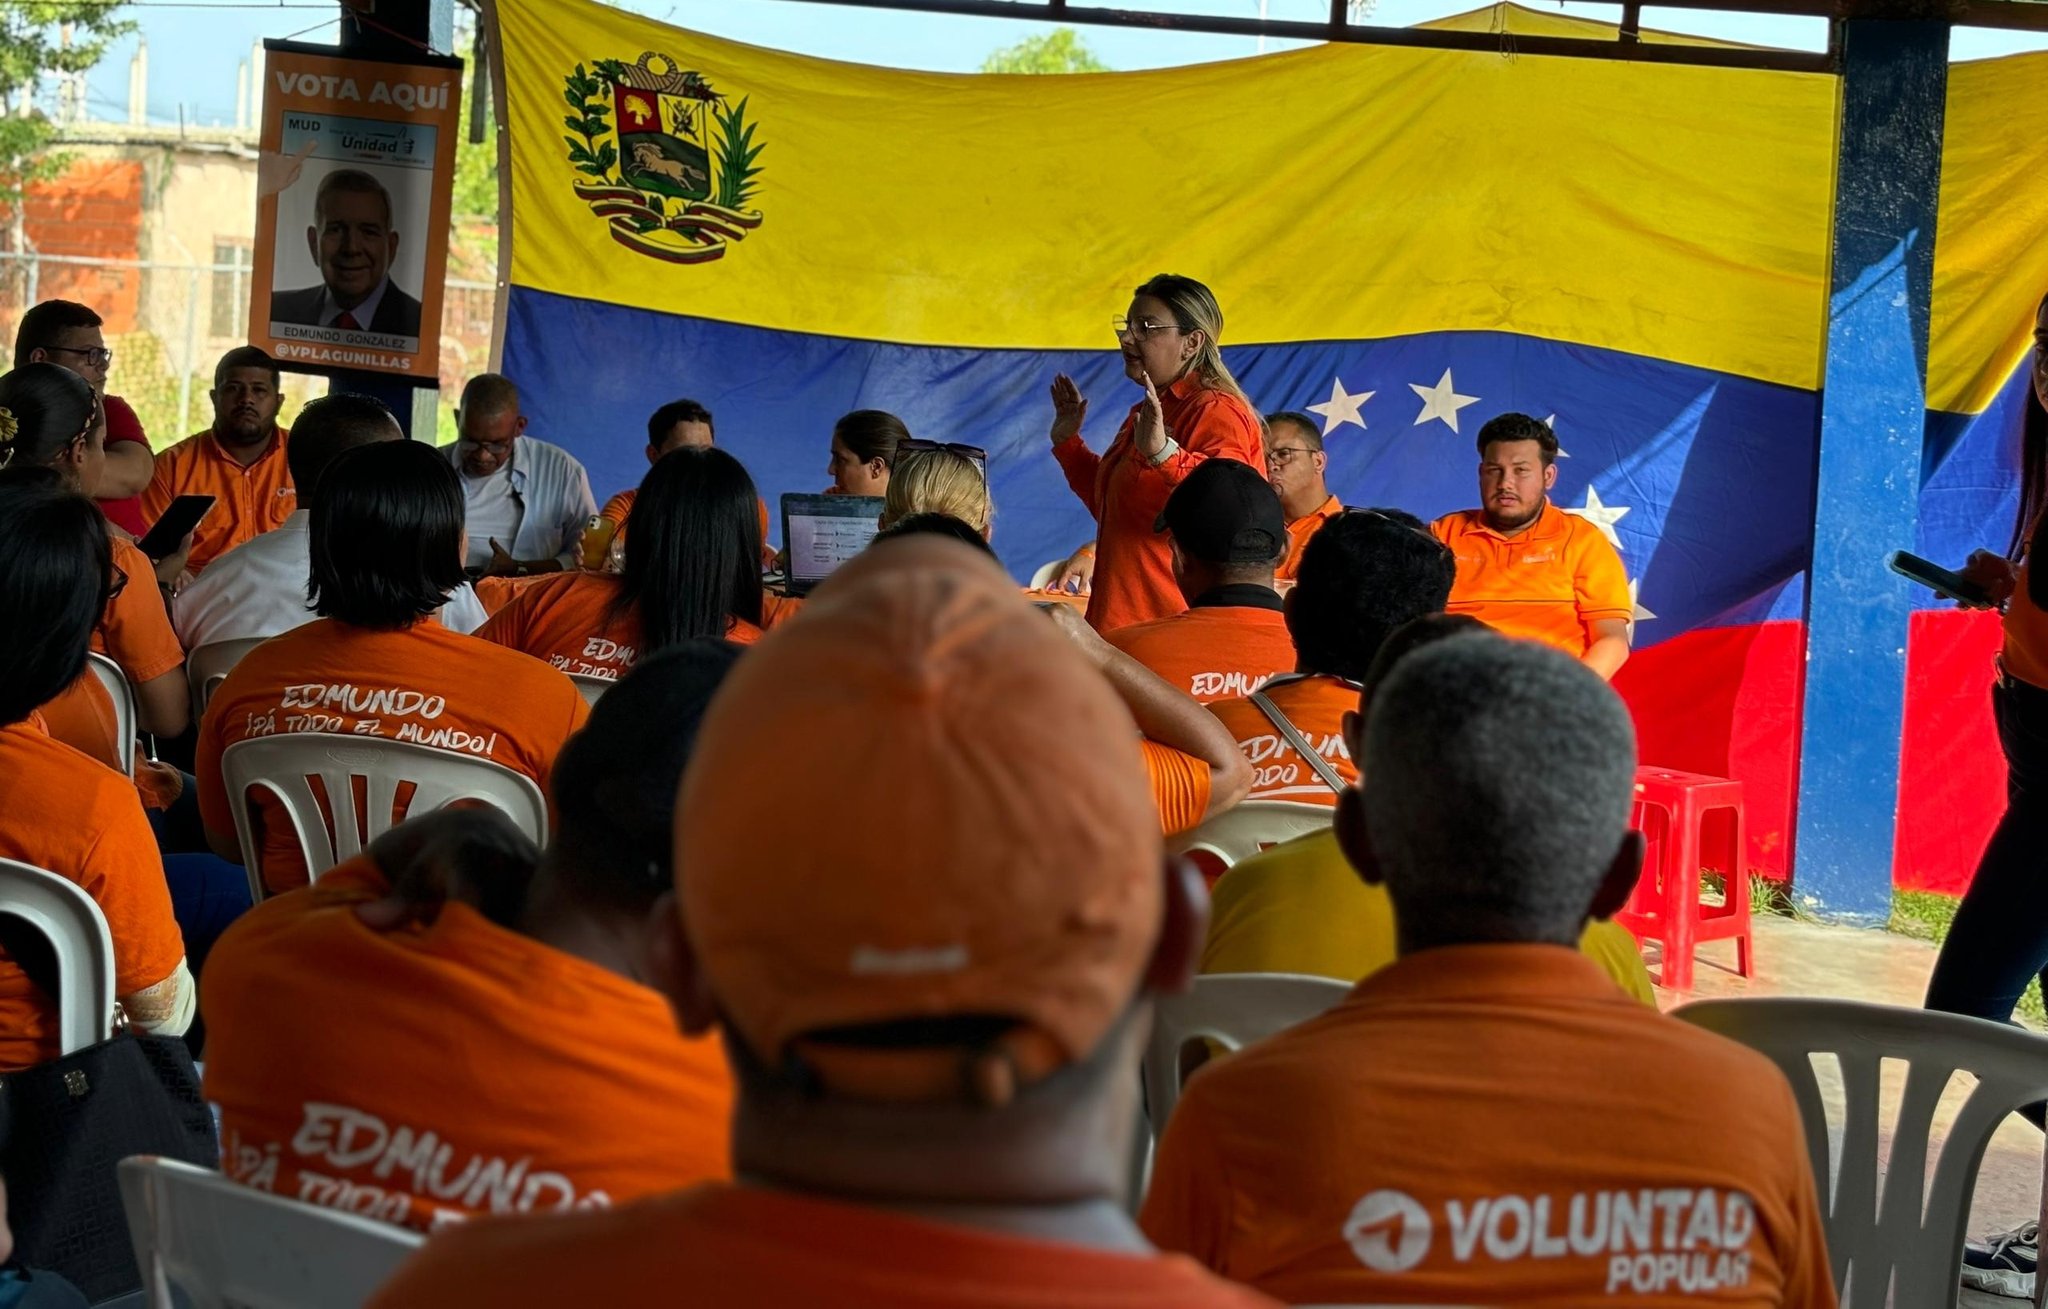 Voluntad Popular: El cambio en Venezuela es inevitable